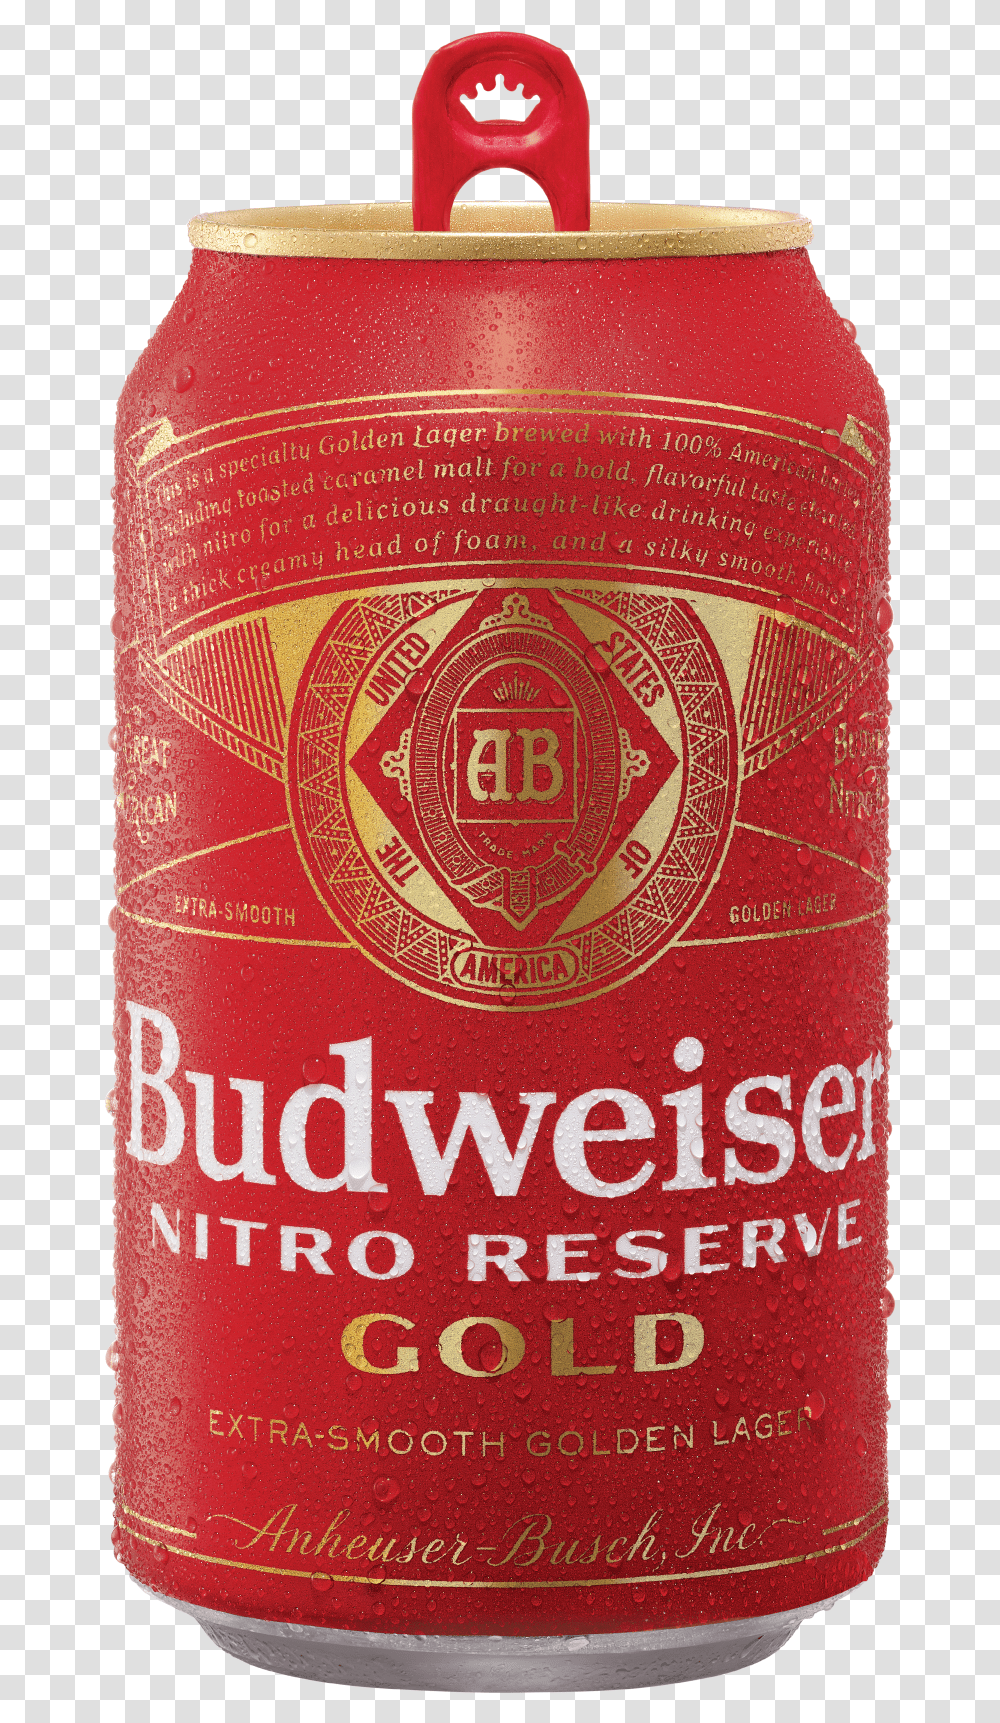 Budweiser Nitro Reserve Gold Budweiser, Bottle, Beer, Alcohol, Beverage Transparent Png